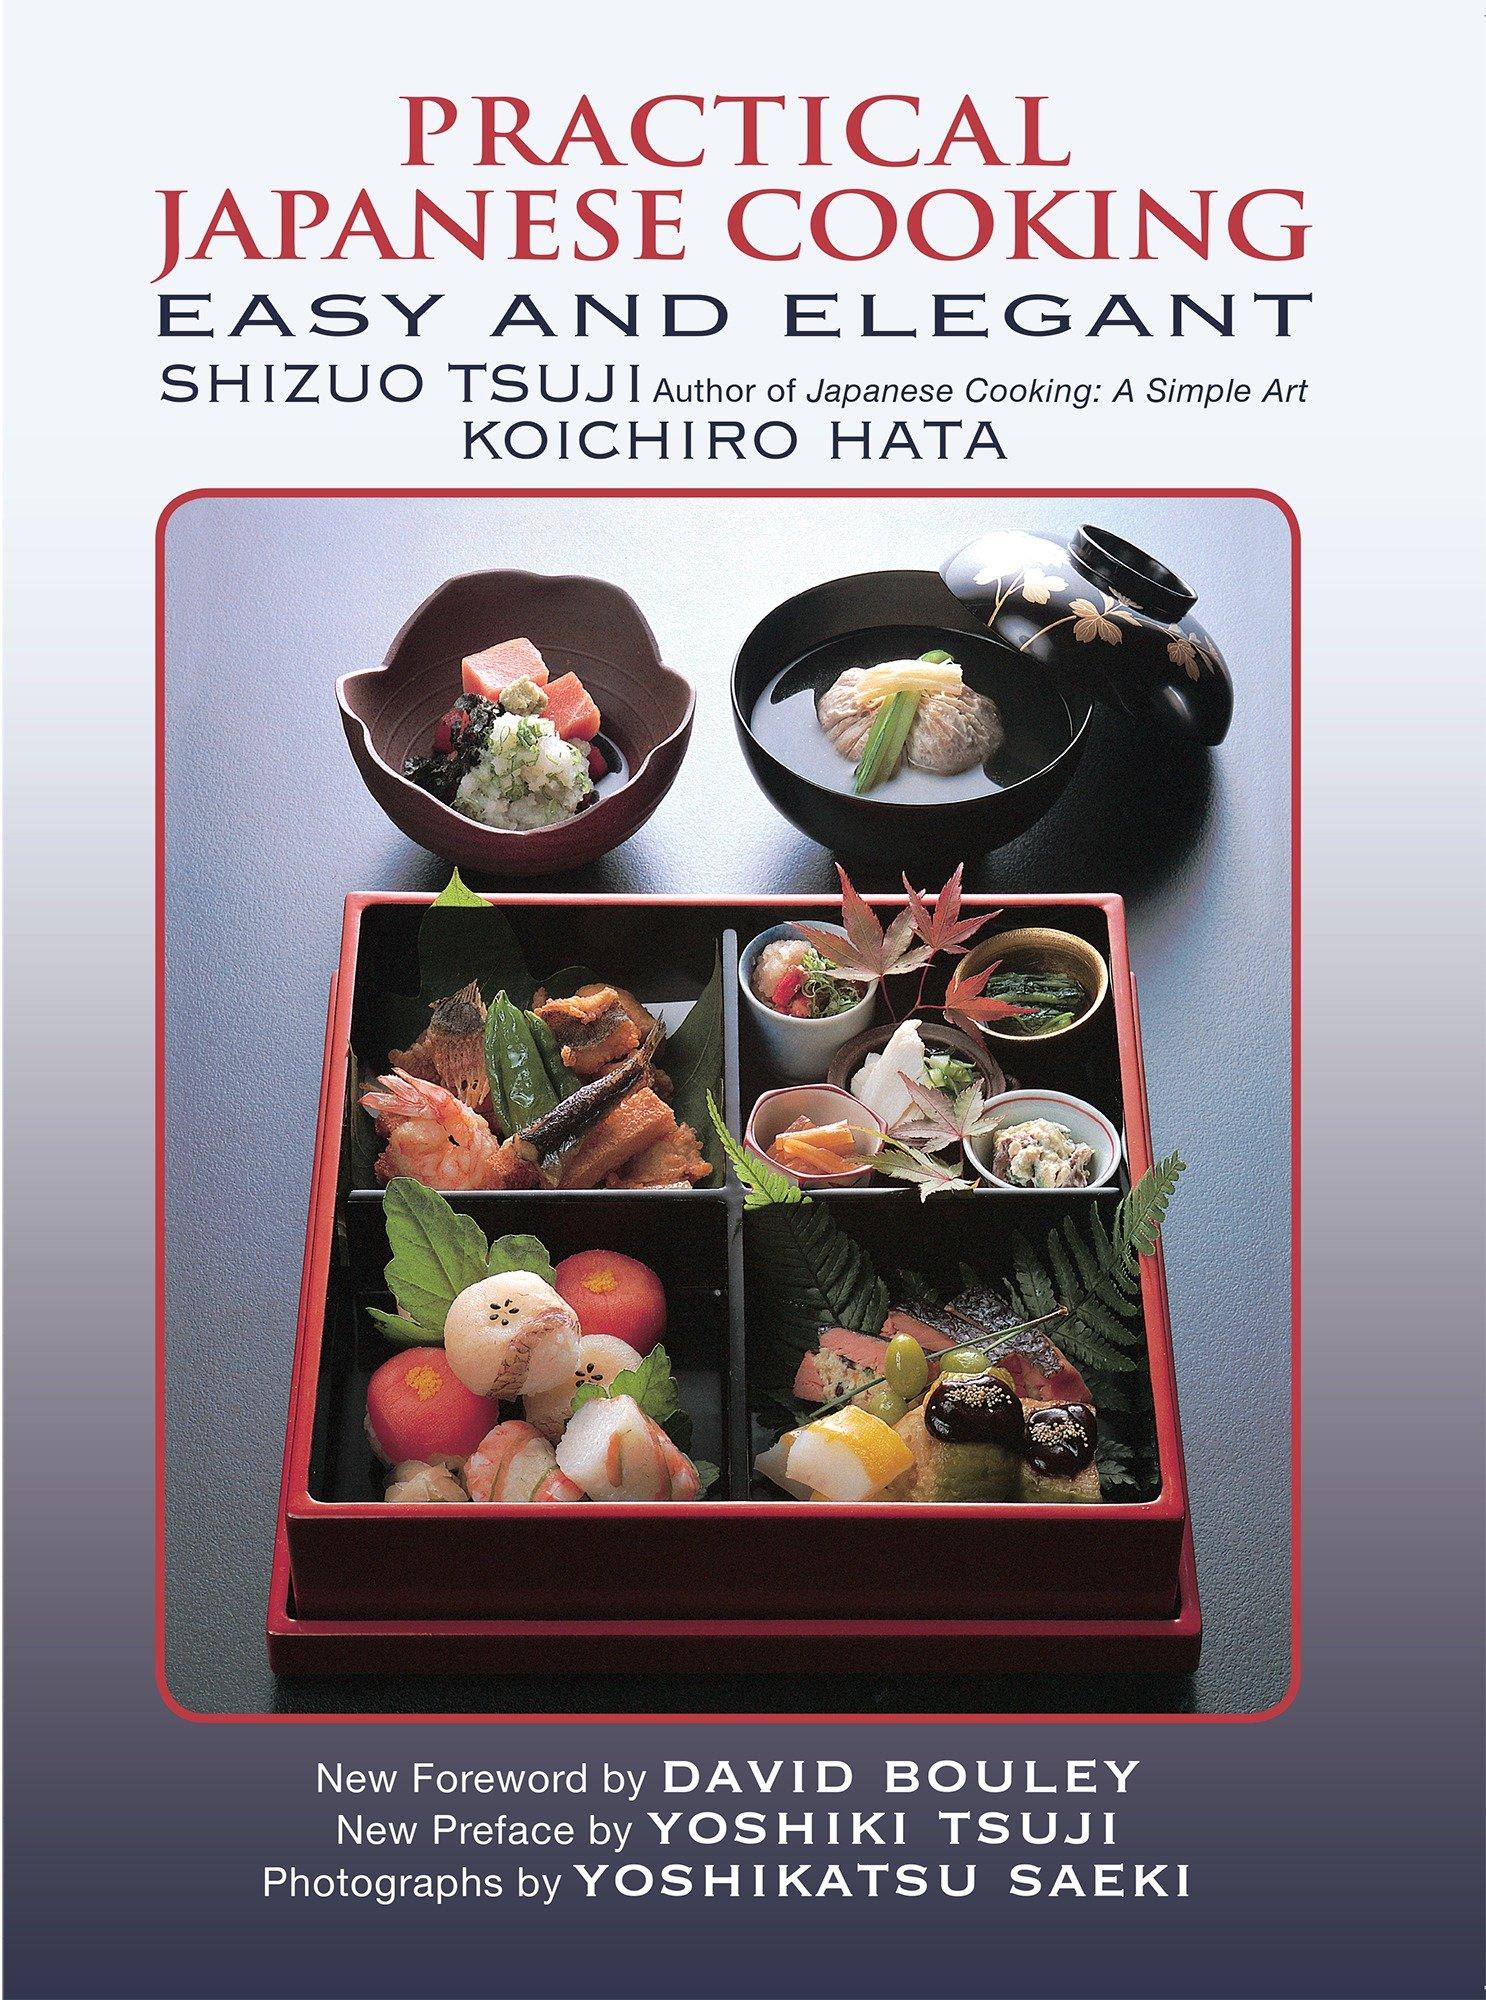 Practical Japanese Cooking / Easy and Elegant / Shizuo Tsuji (u. a.) / Taschenbuch / Kartoniert / Broschiert / Englisch / 2016 / Kodansha America, Inc / EAN 9781568365671 - Tsuji, Shizuo